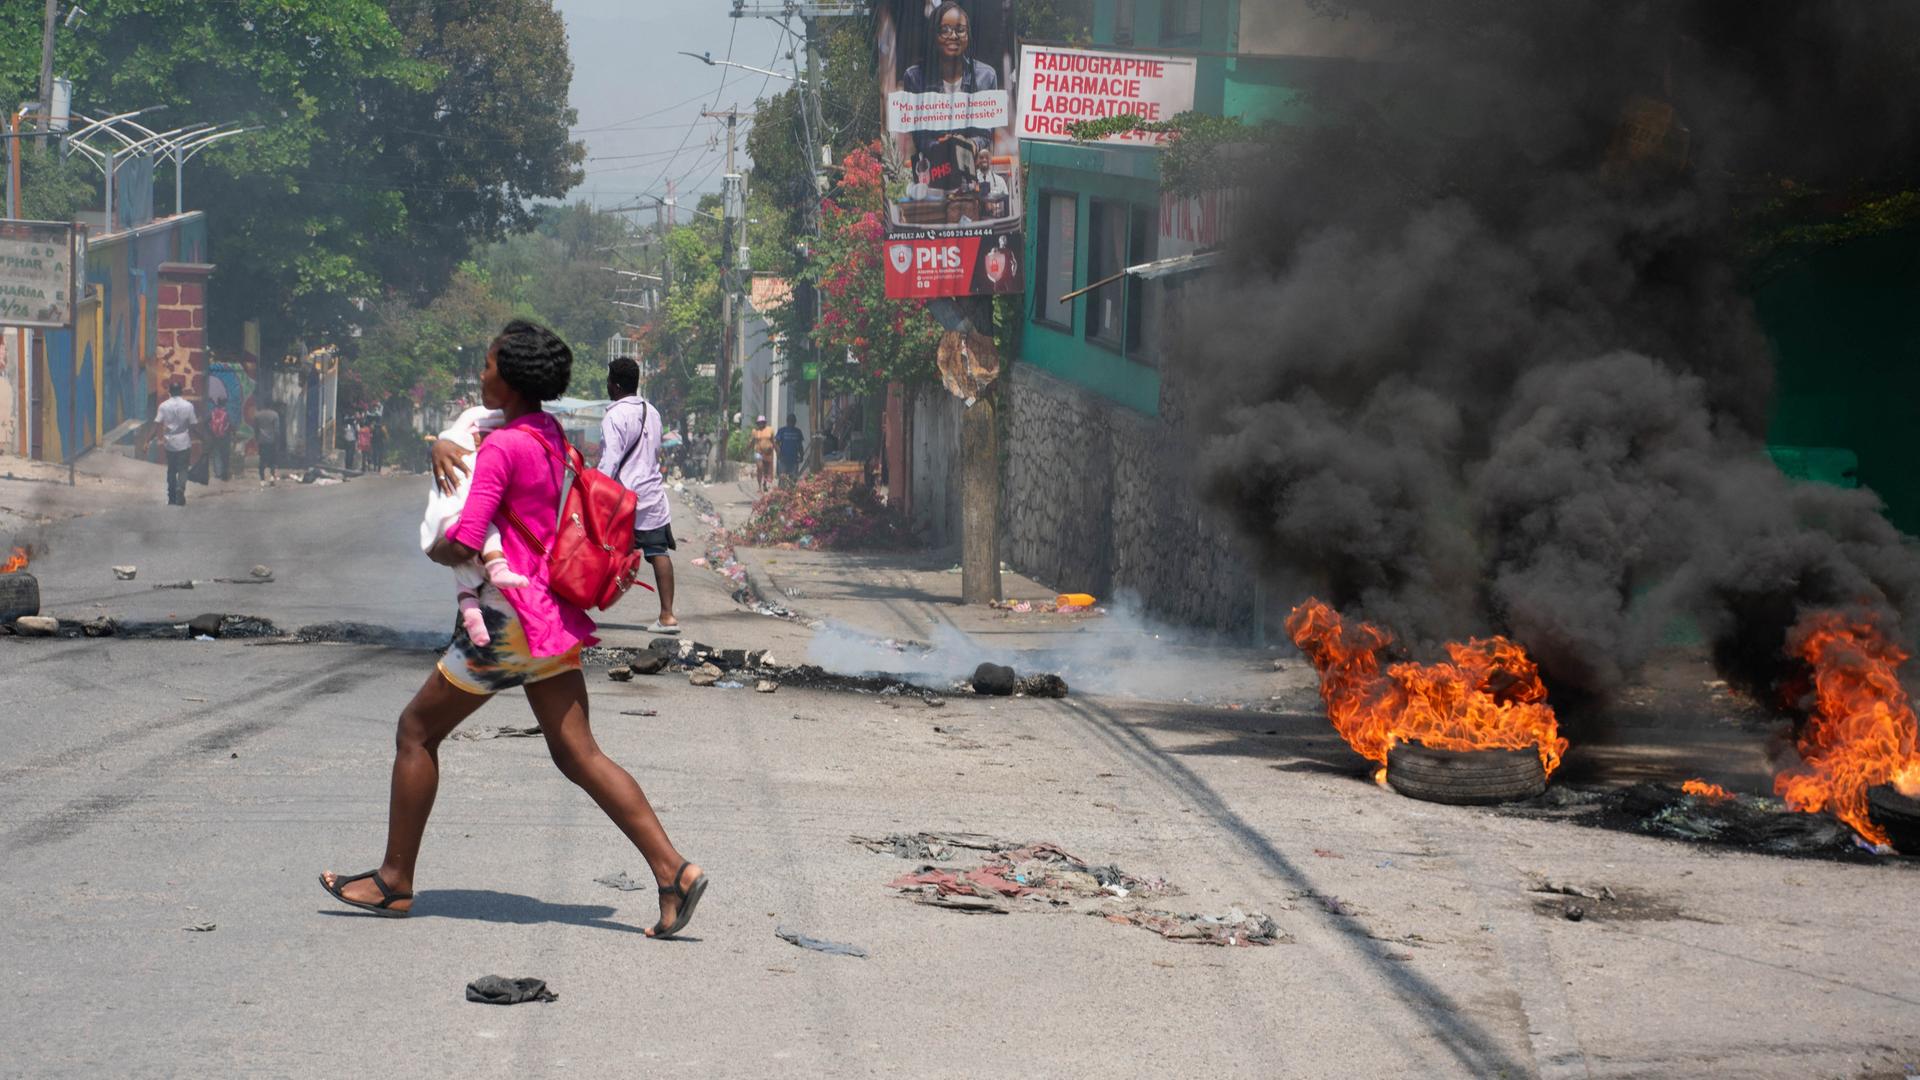 Eine Frau mit einem Kind im Arm rennt über eine Straße in Haitis Hauptstadt Port-au-Prince. Neben ihr sind brennende Reifen zu sehen, auf der Straße liegt Müll.